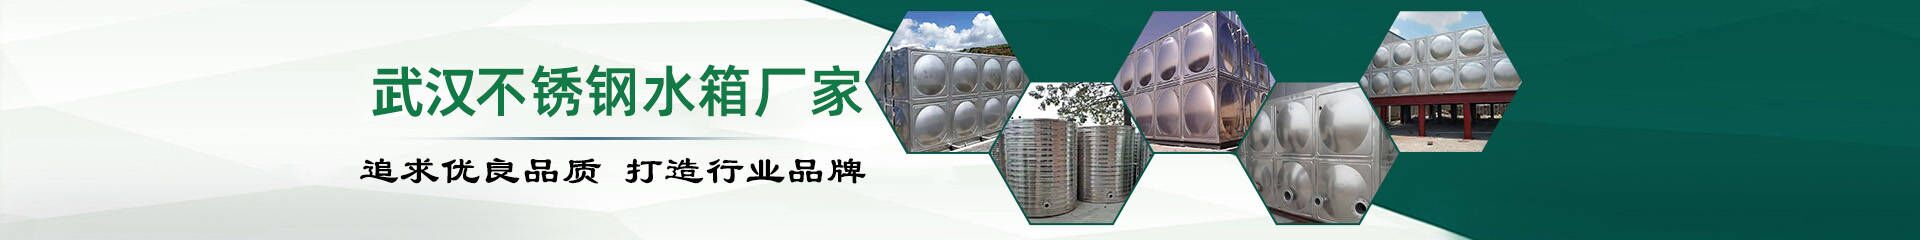 东风康明斯_合作伙伴_武汉不锈钢水箱厂家联系方式